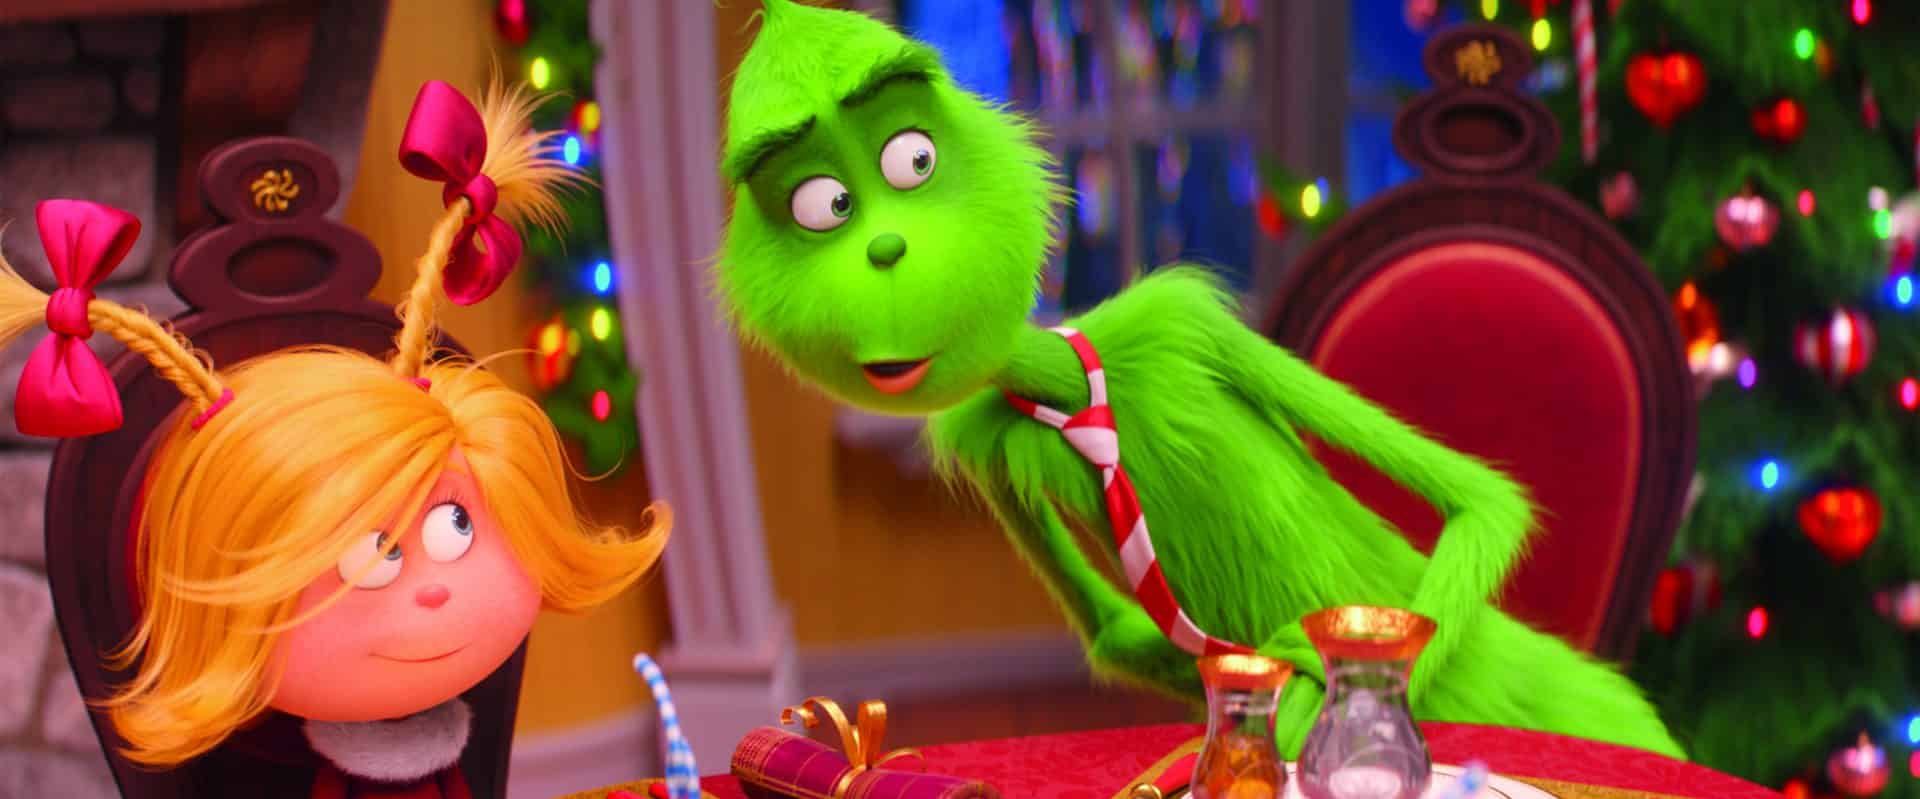 Il Grinch: la recensione del simpaticissimo film di Natale